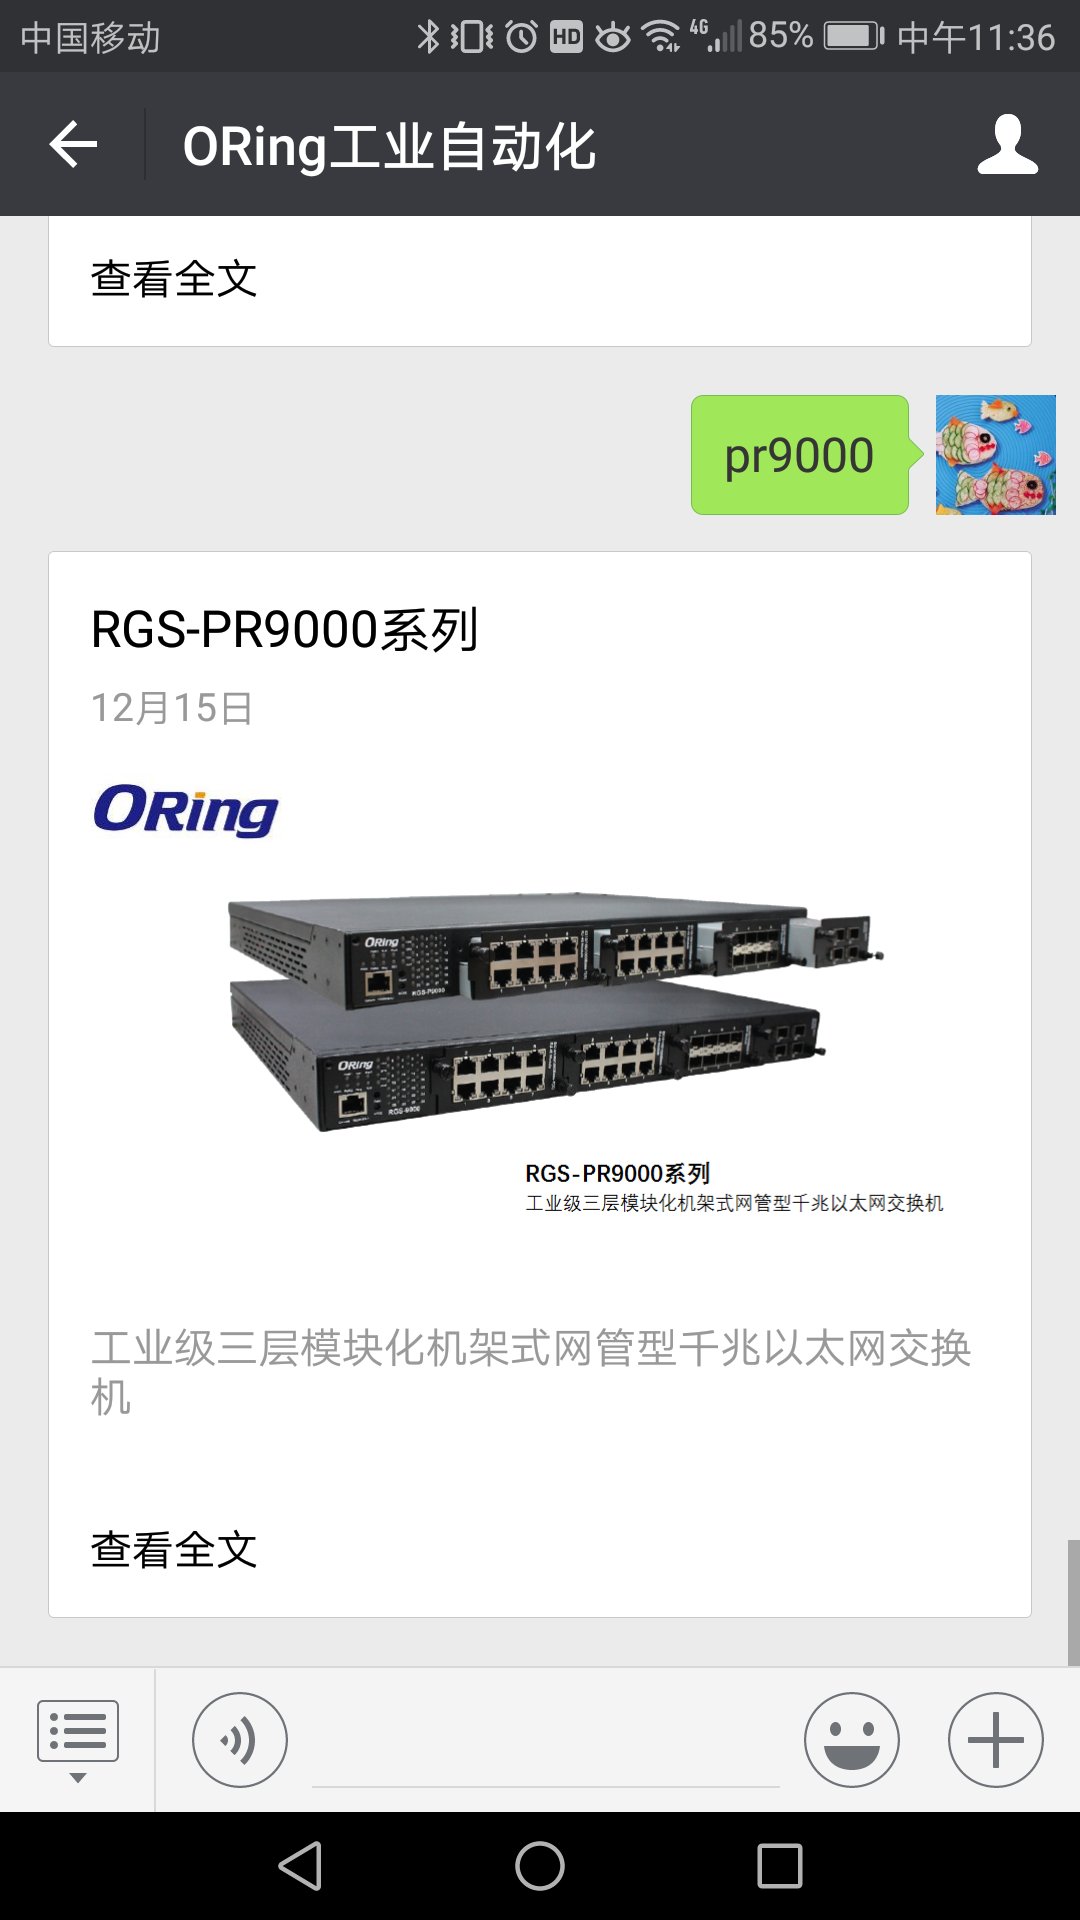 RGS-PR9000-A